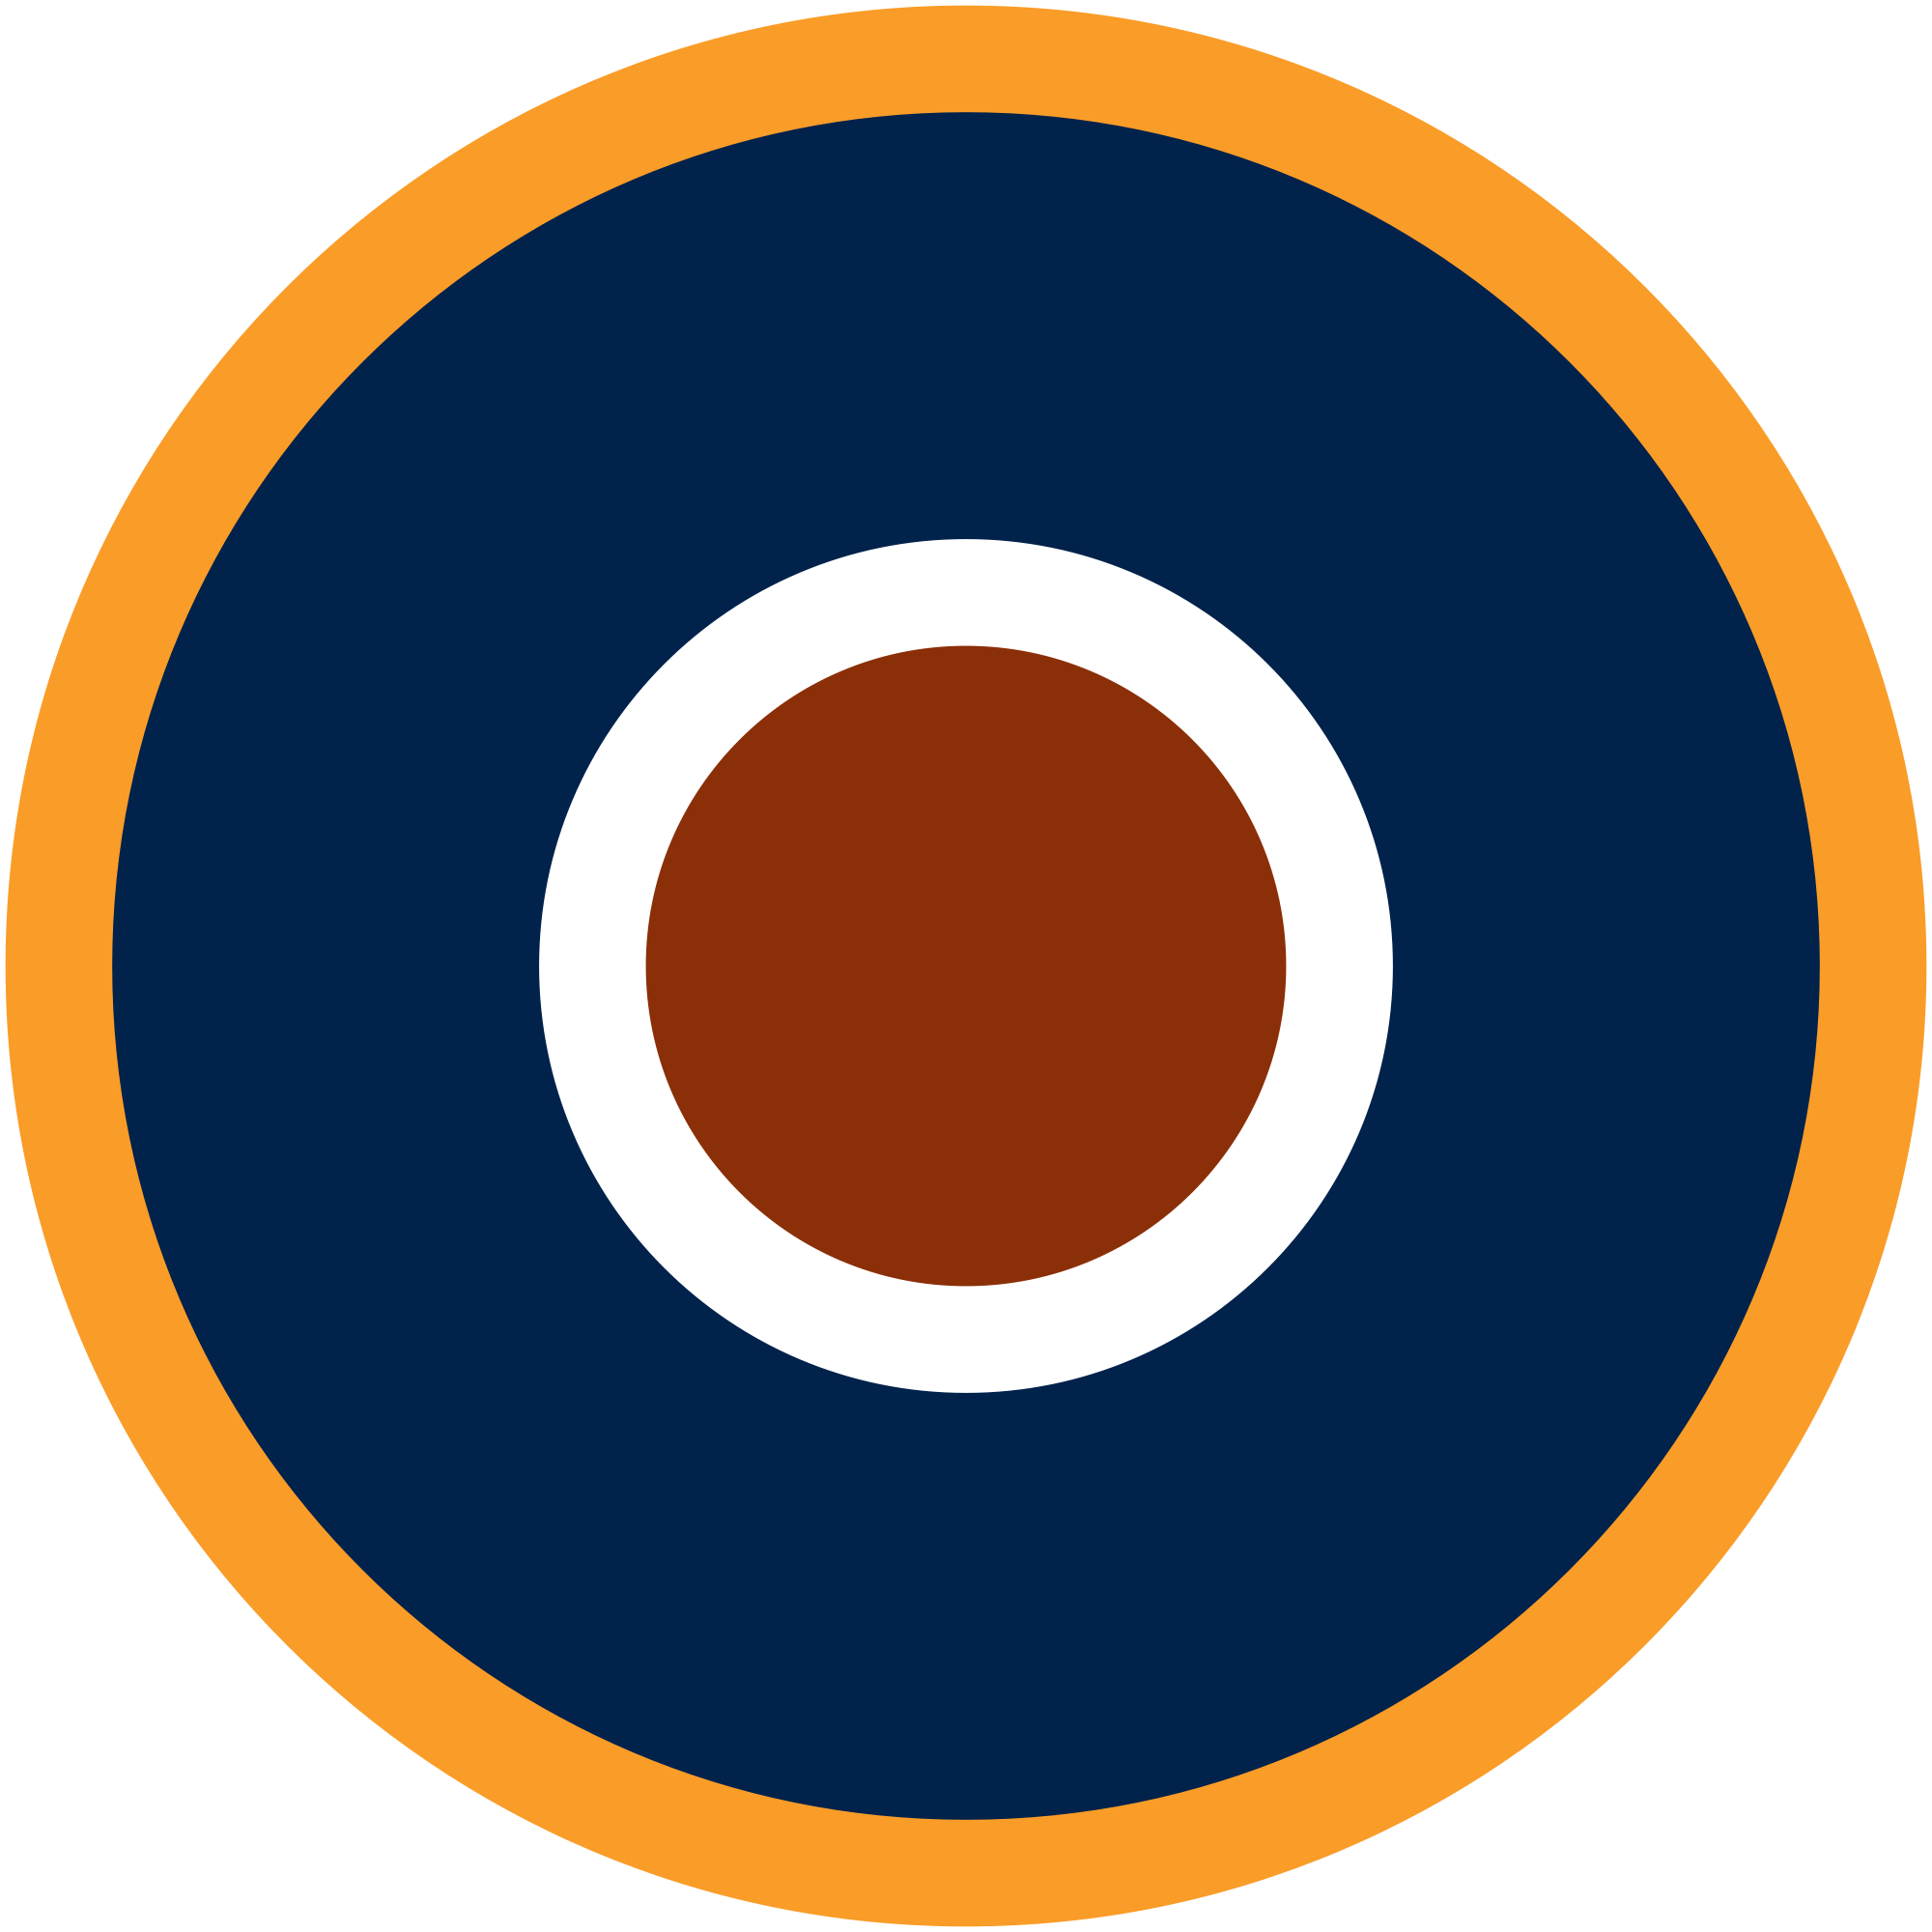 Spitfire Plane Logo - Spitfire Logo Image - Free Logo Png